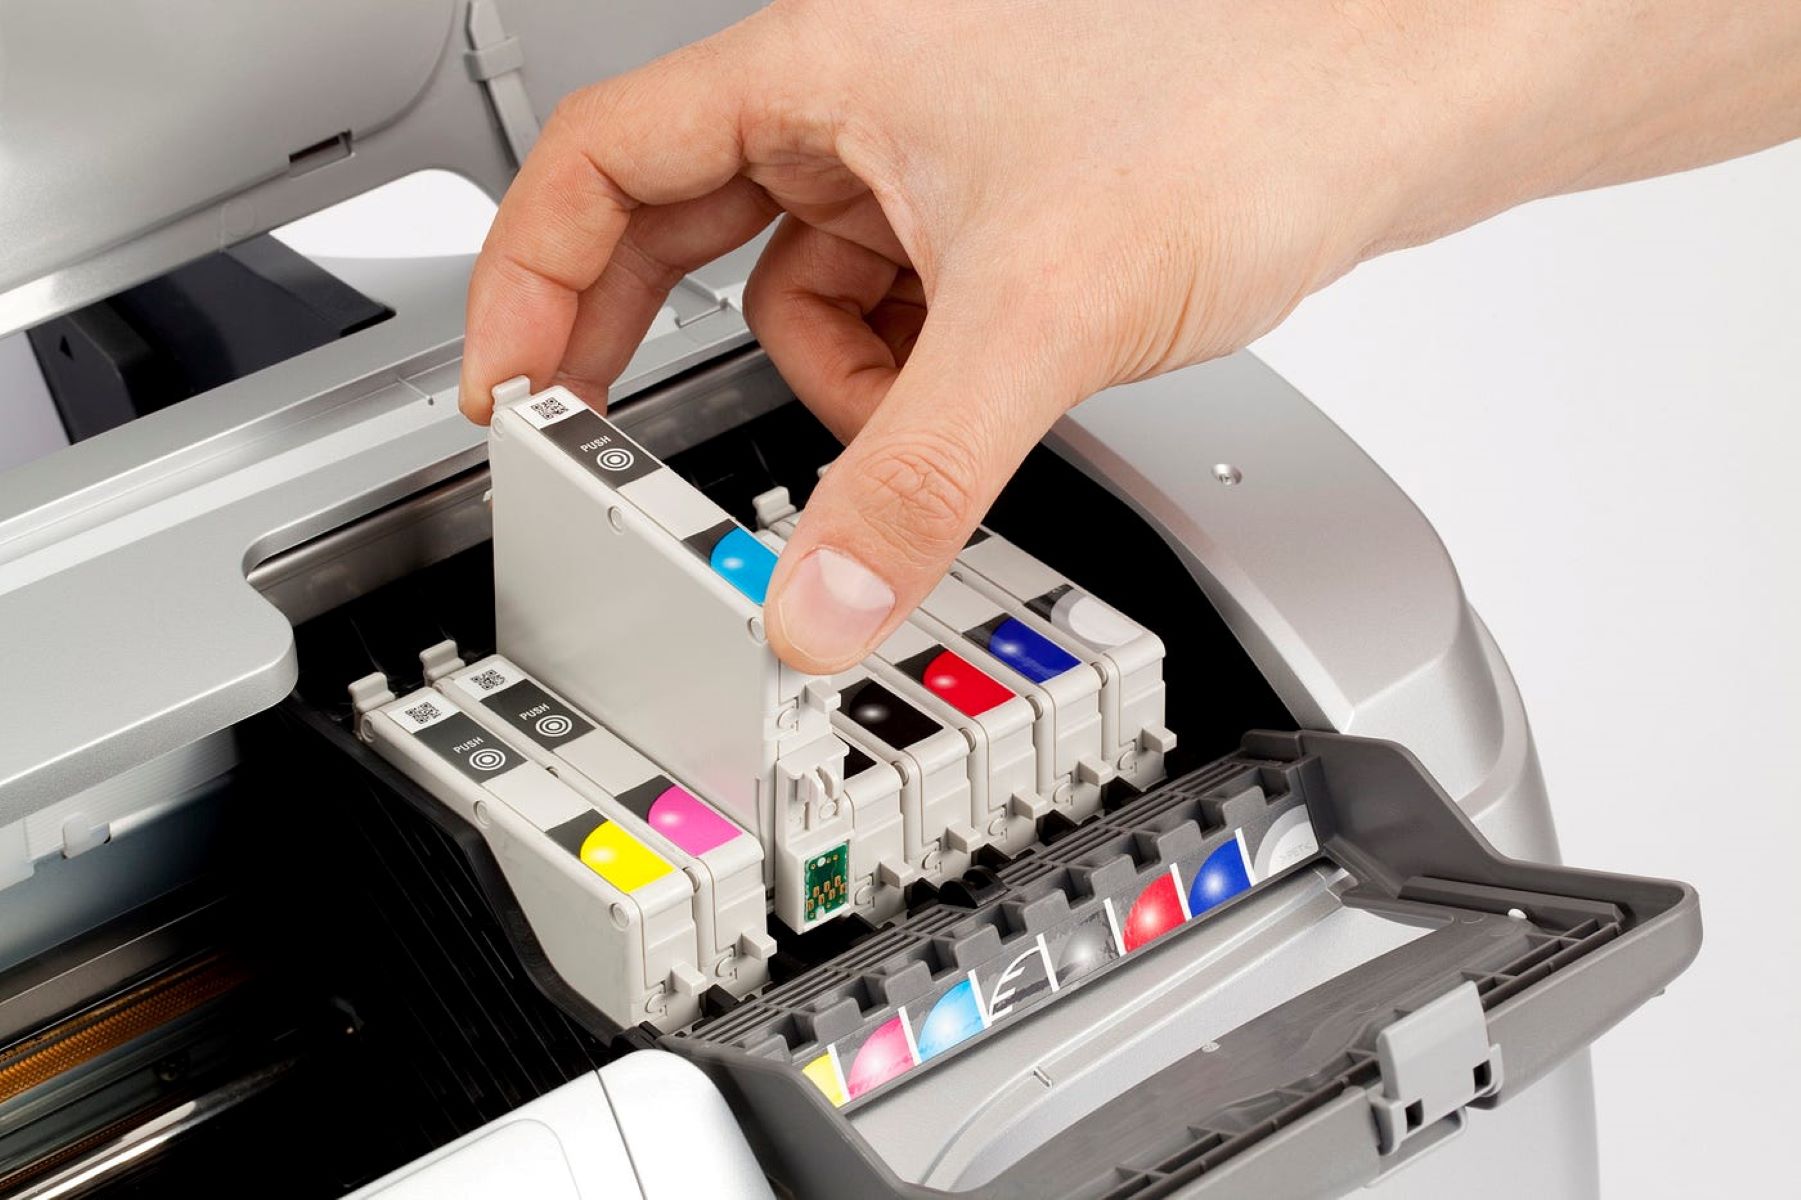 What Printer Cartridge Do I Need